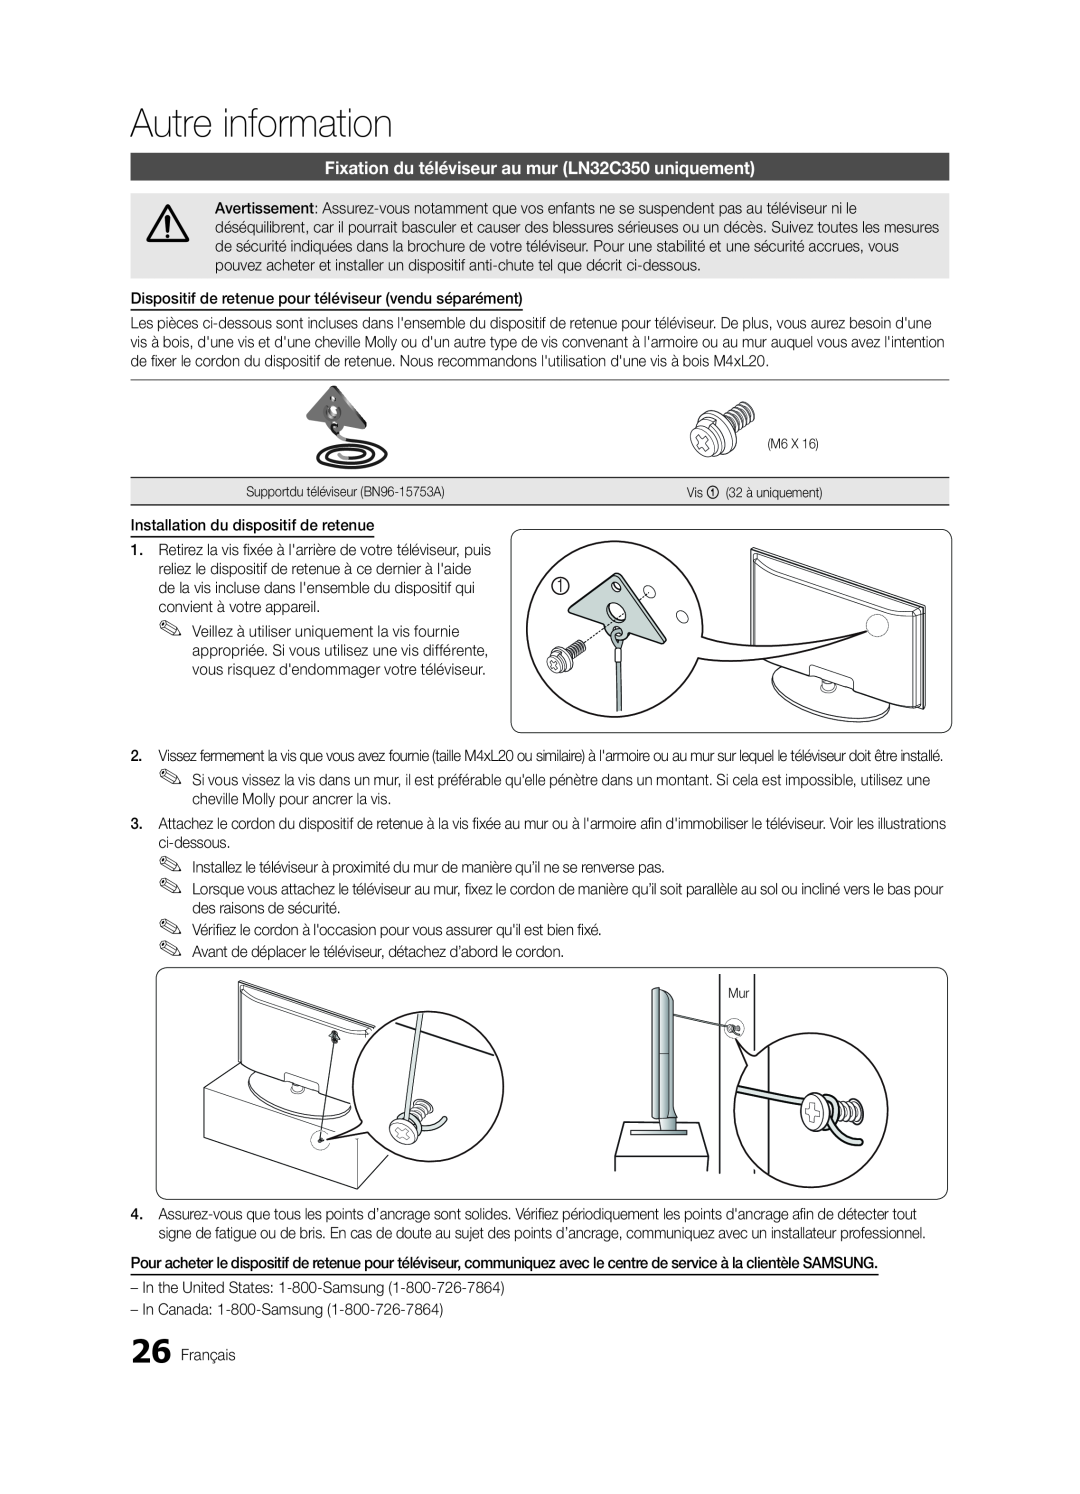 Samsung BN68-02620B-06 user manual Fixation du téléviseur au mur LN32C350 uniquement, Autre information 